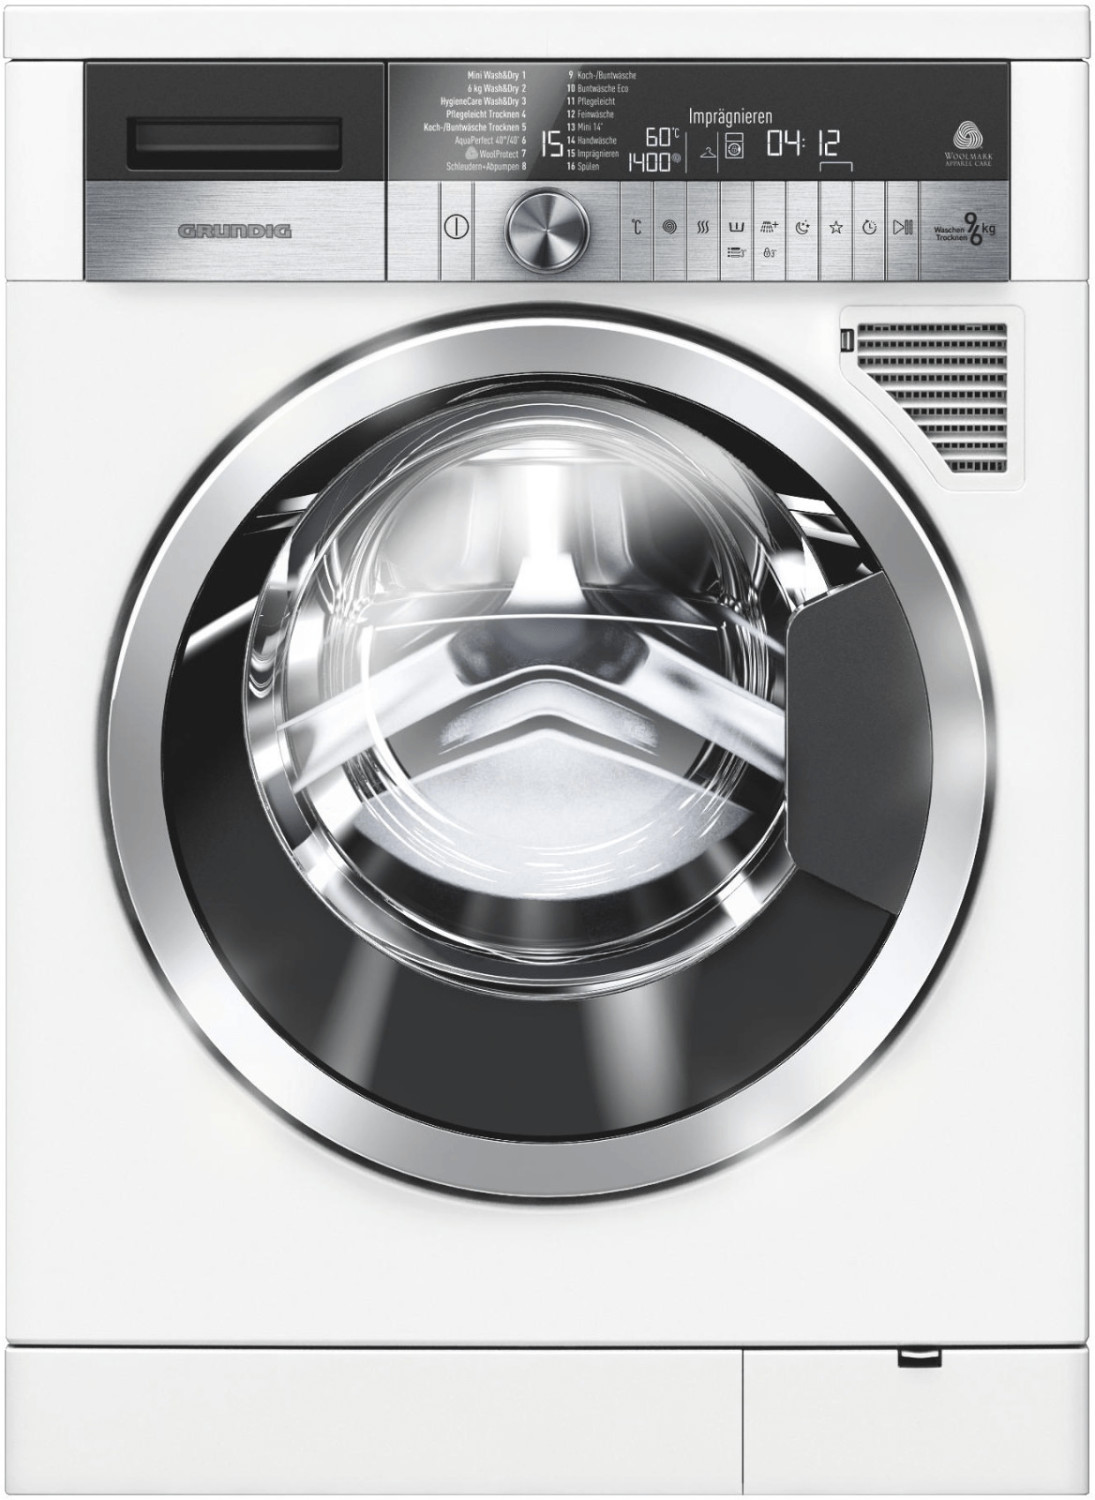 Unsere Top Produkte - Finden Sie die Grundig waschtrockner entsprechend Ihrer Wünsche